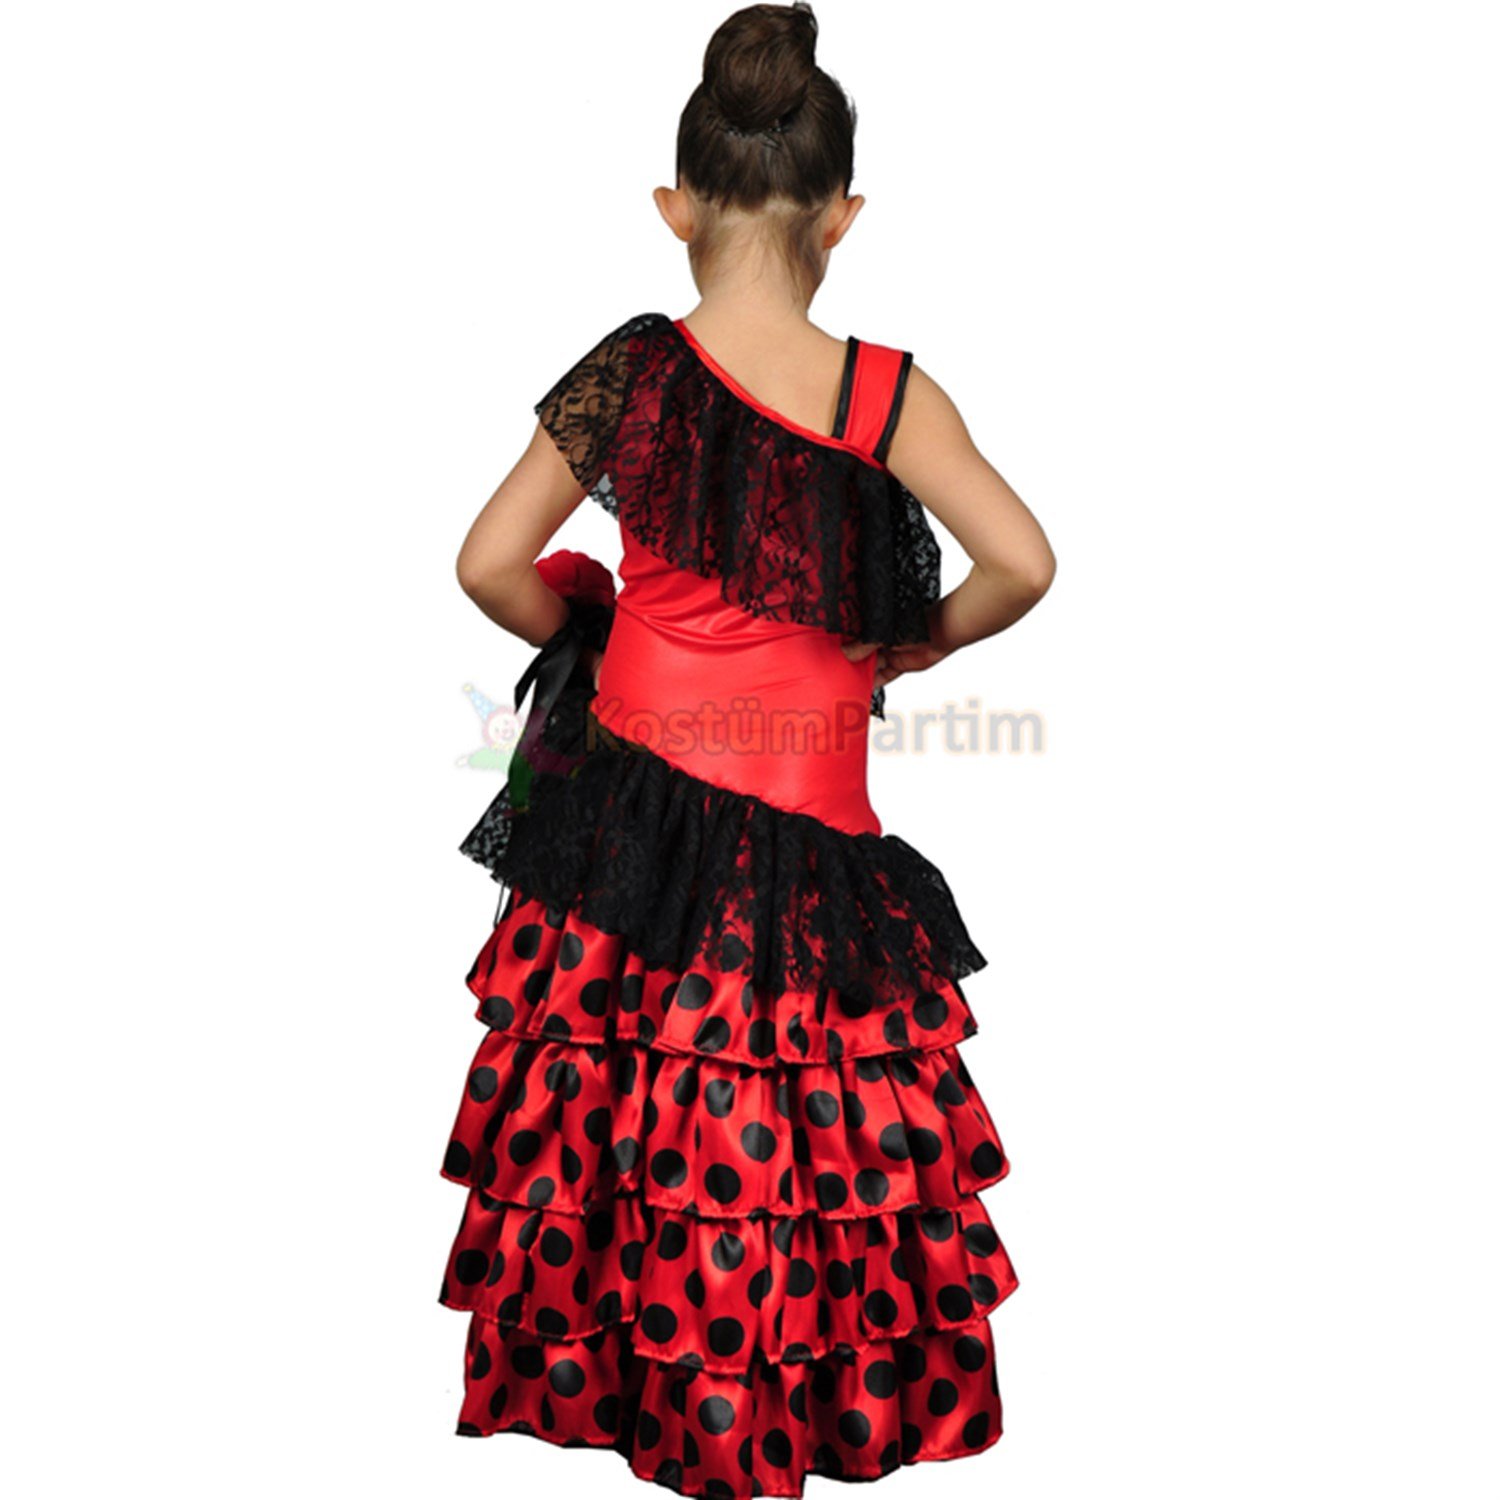 Kırmızı Roman Dans Kıyafeti Kız Çocuk - KostümPartim®